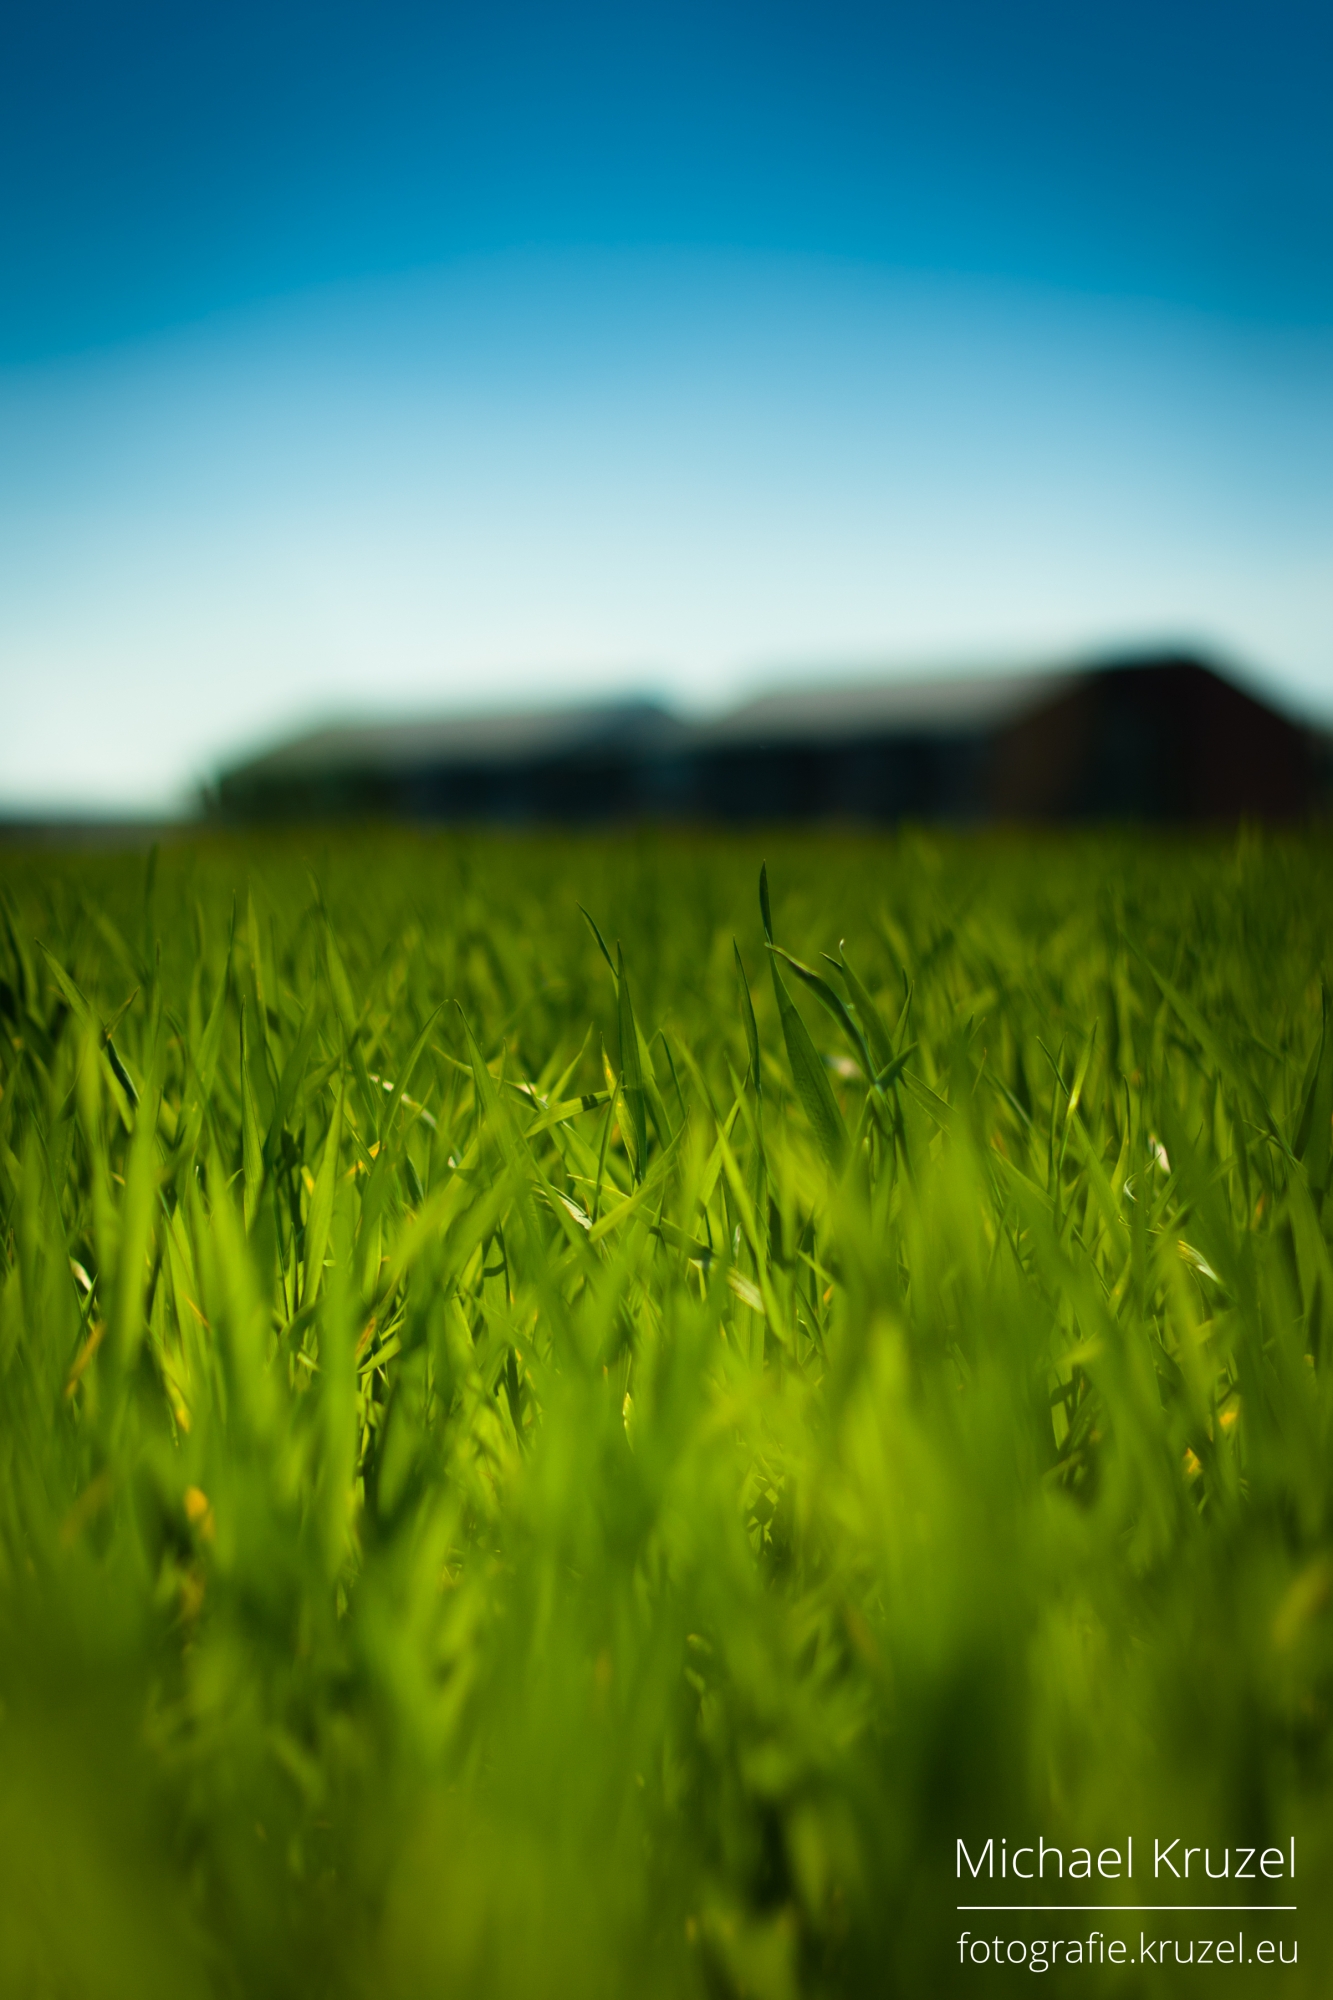  Grass